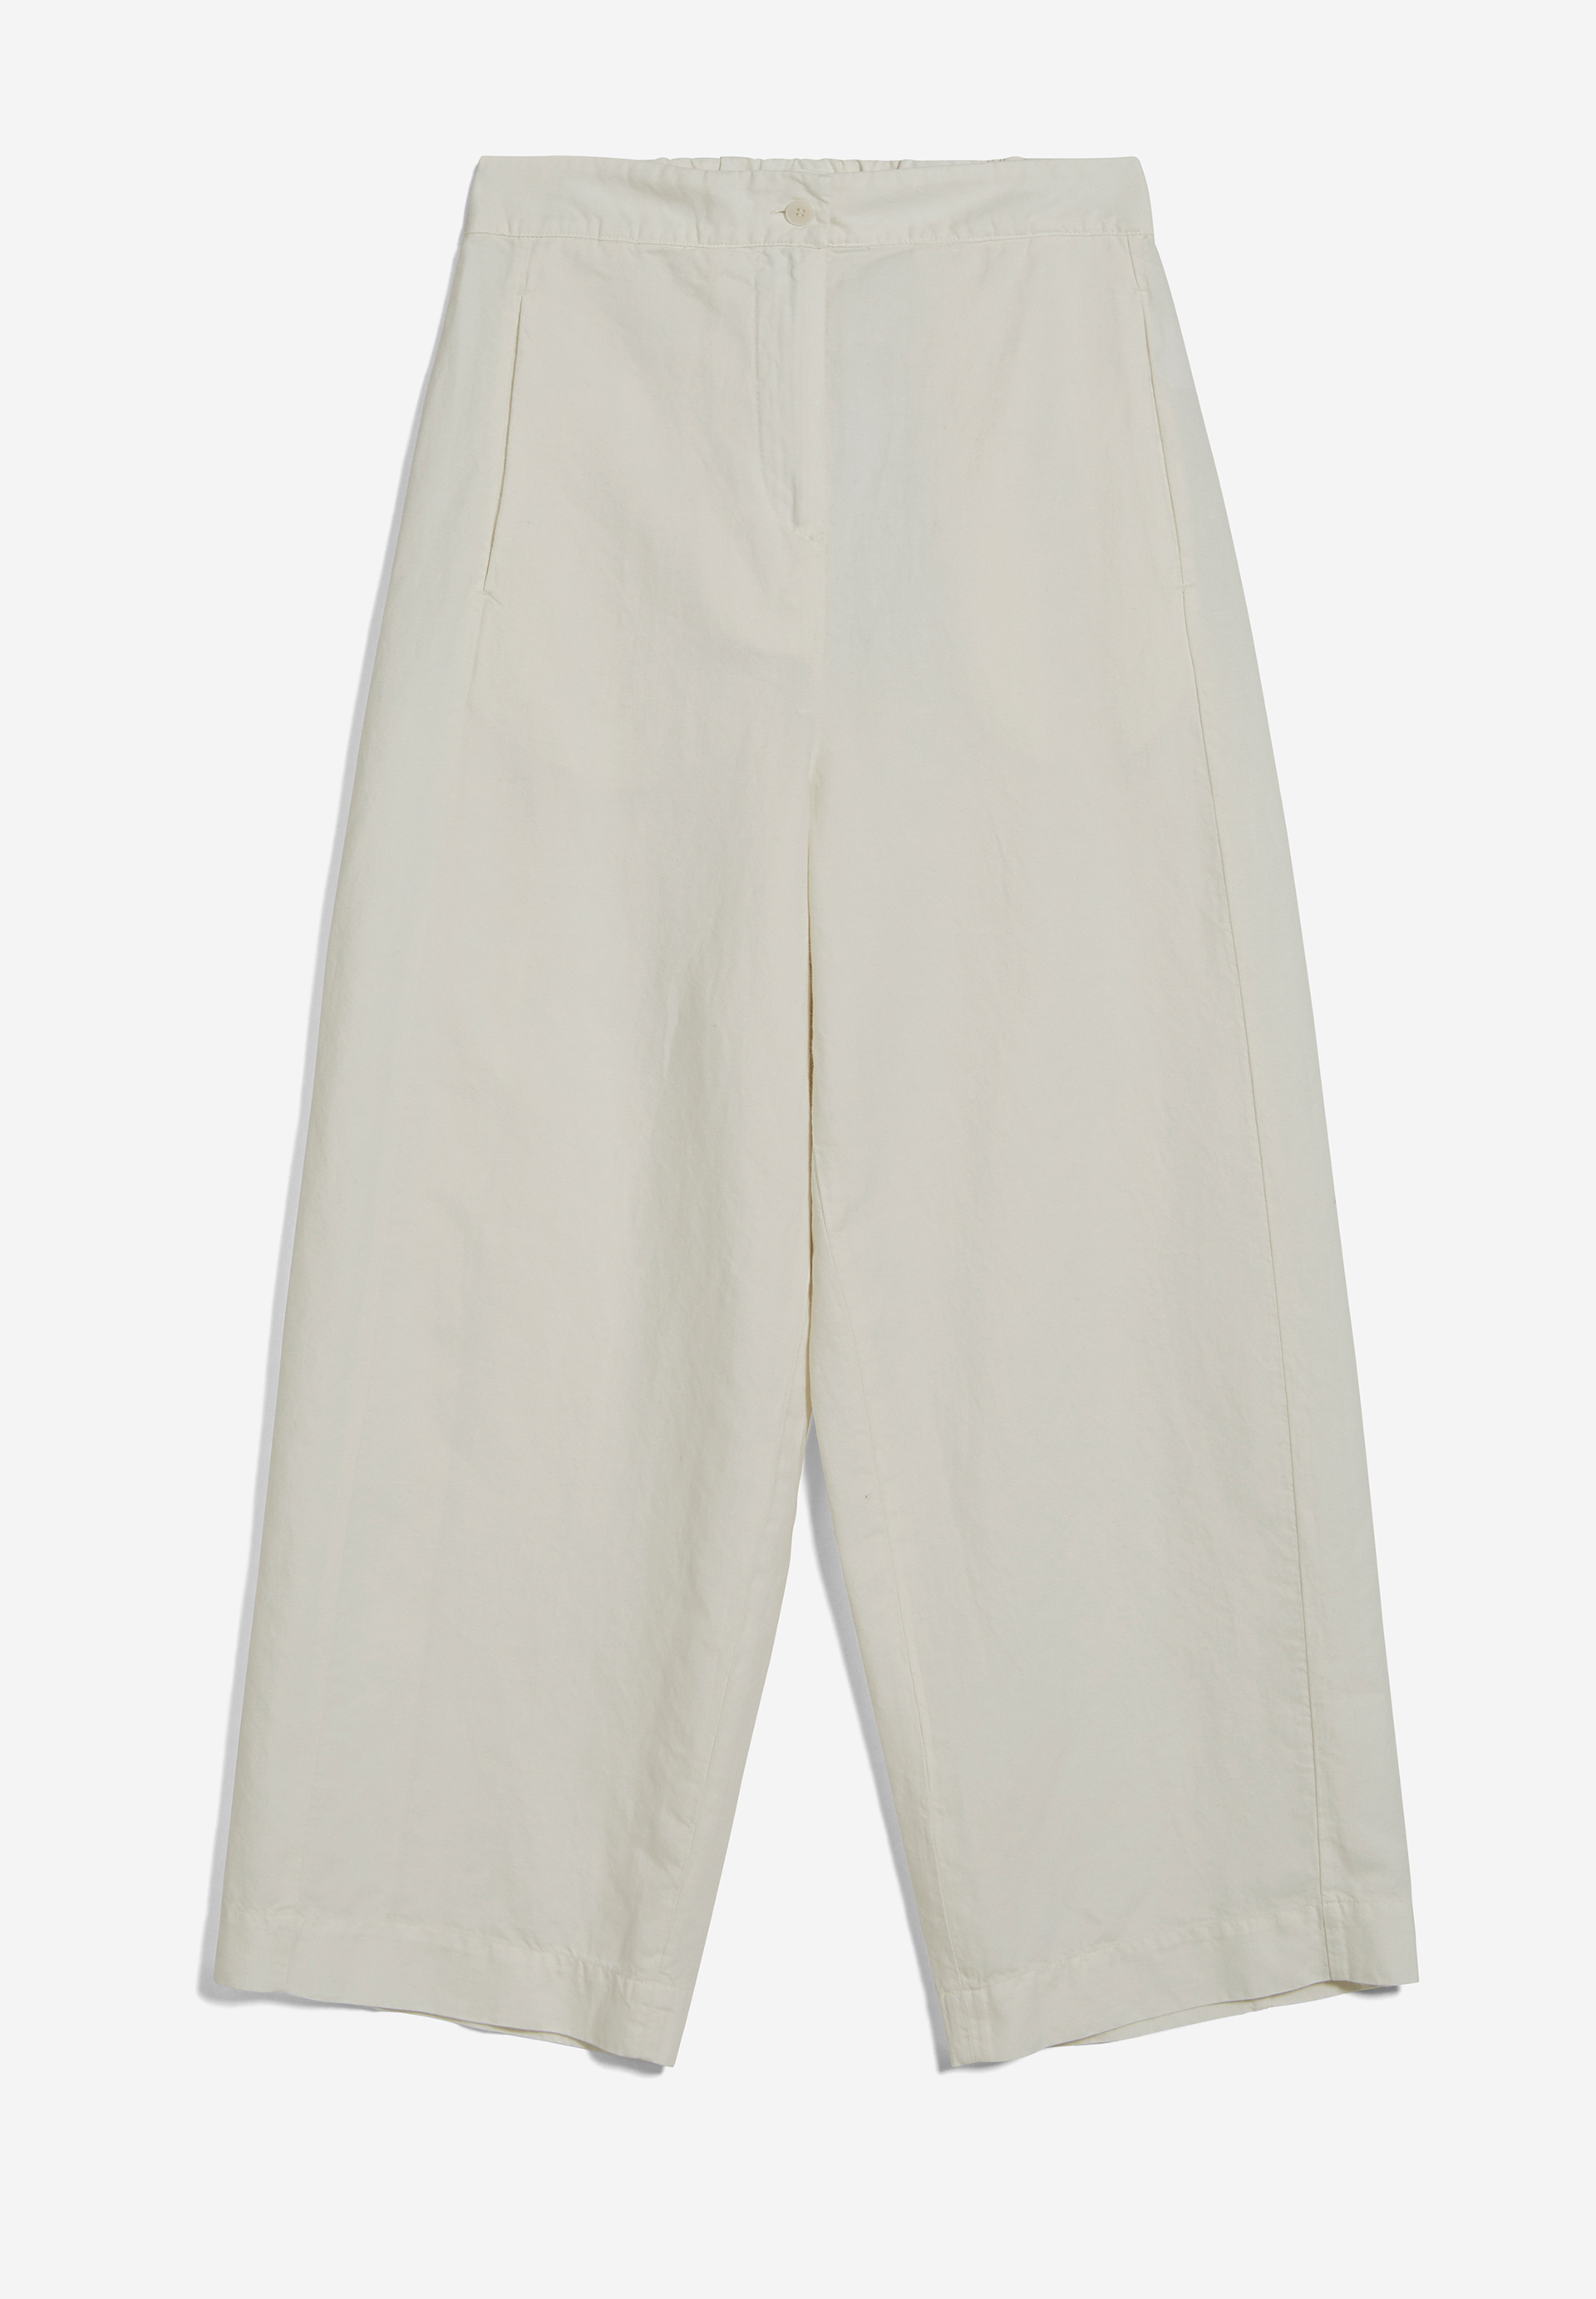 CARUNAA LINO Pants Regular Fit made of Linen-Mix